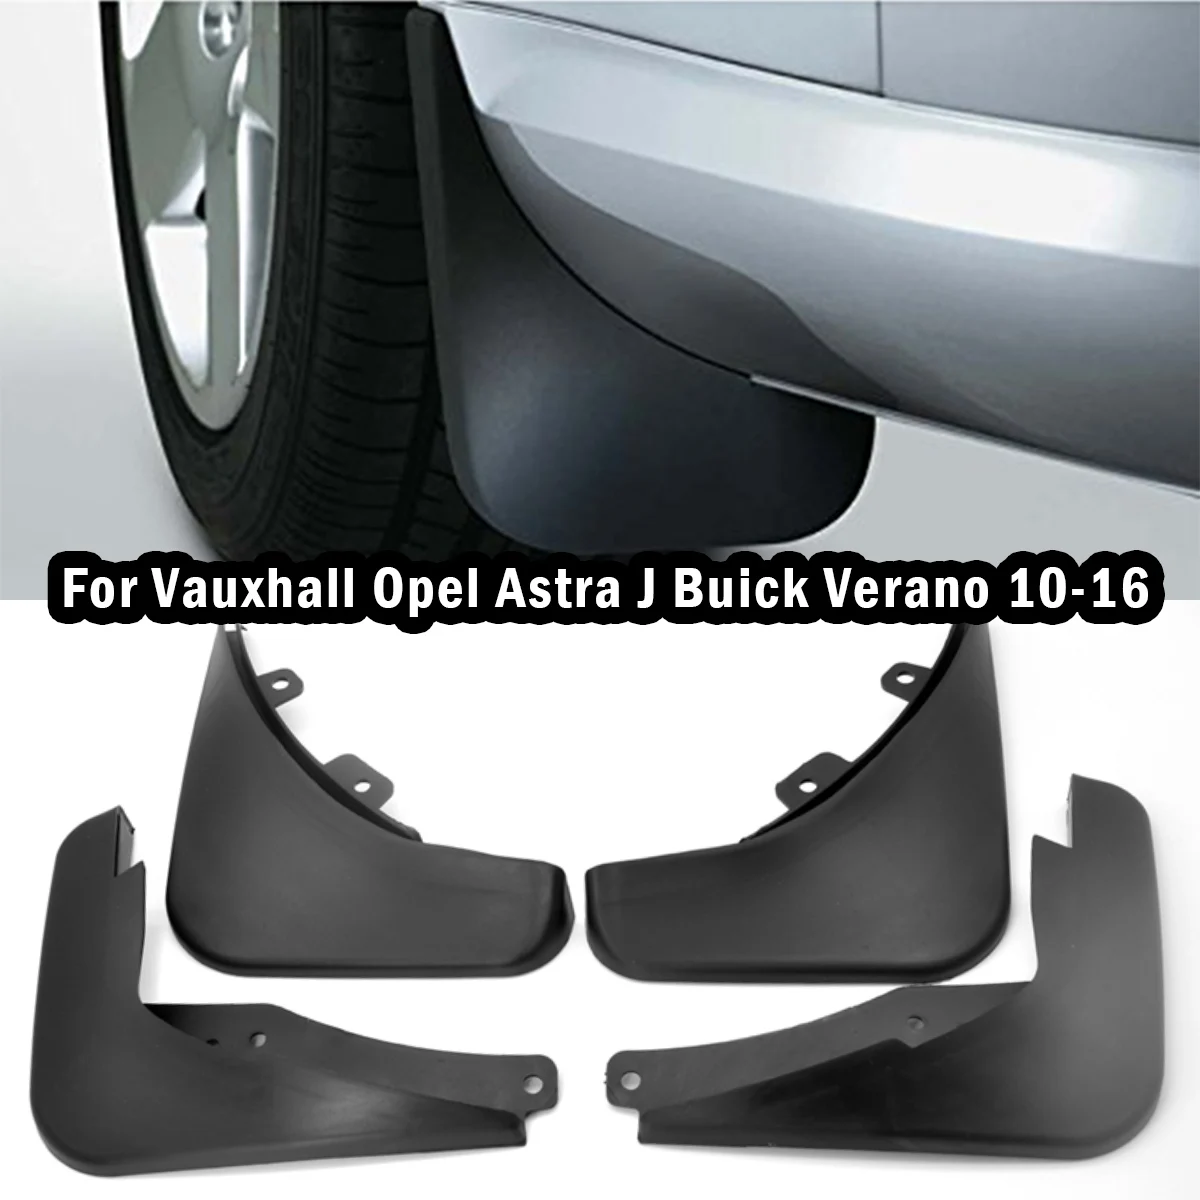 

Брызговики для Vauxhall Opel Astra J Buick Verano 2010-2016, 2010 2011 2012 2013 2014